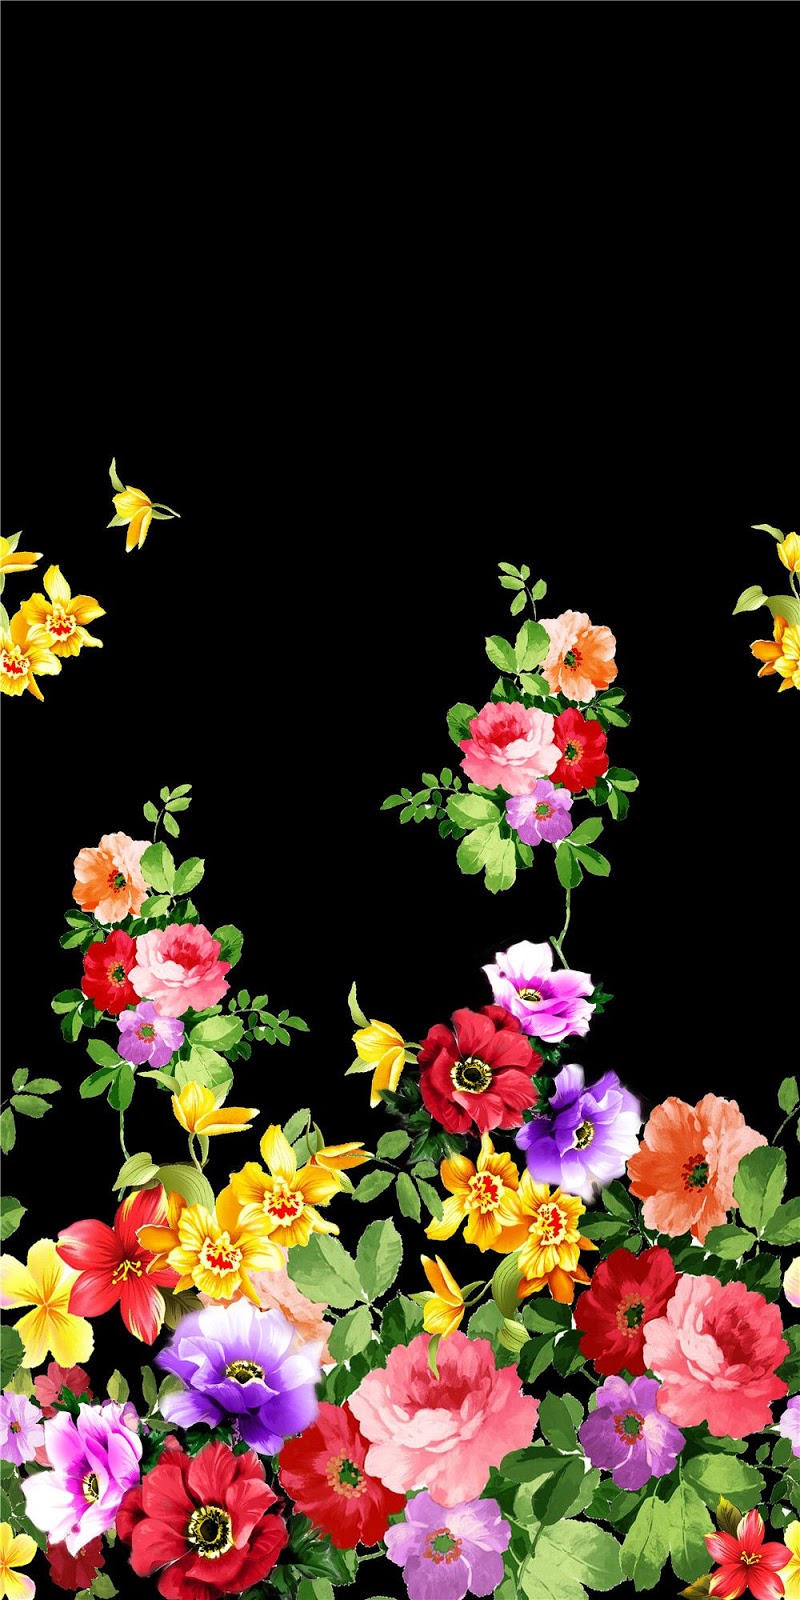 digitaldruck tapete,blume,pflanze,blumendesign,blütenblatt,rose